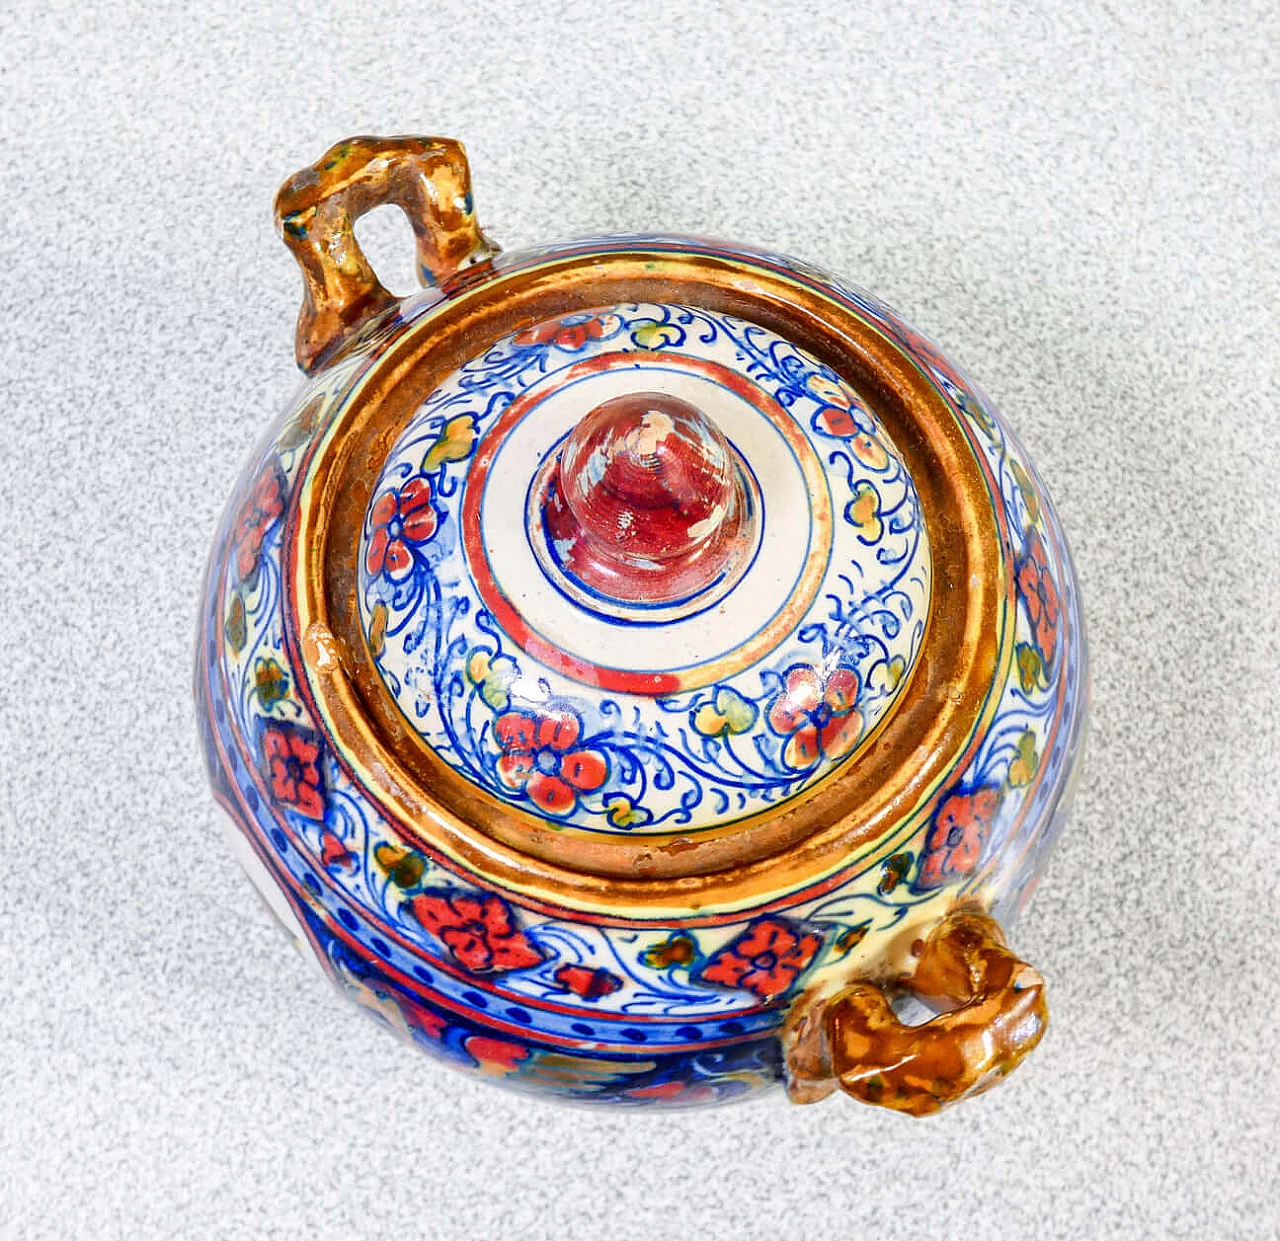 Ceramic teapot and sugar bowl by Mastro Giorgio Gualdo Tadino, early 20th century 13